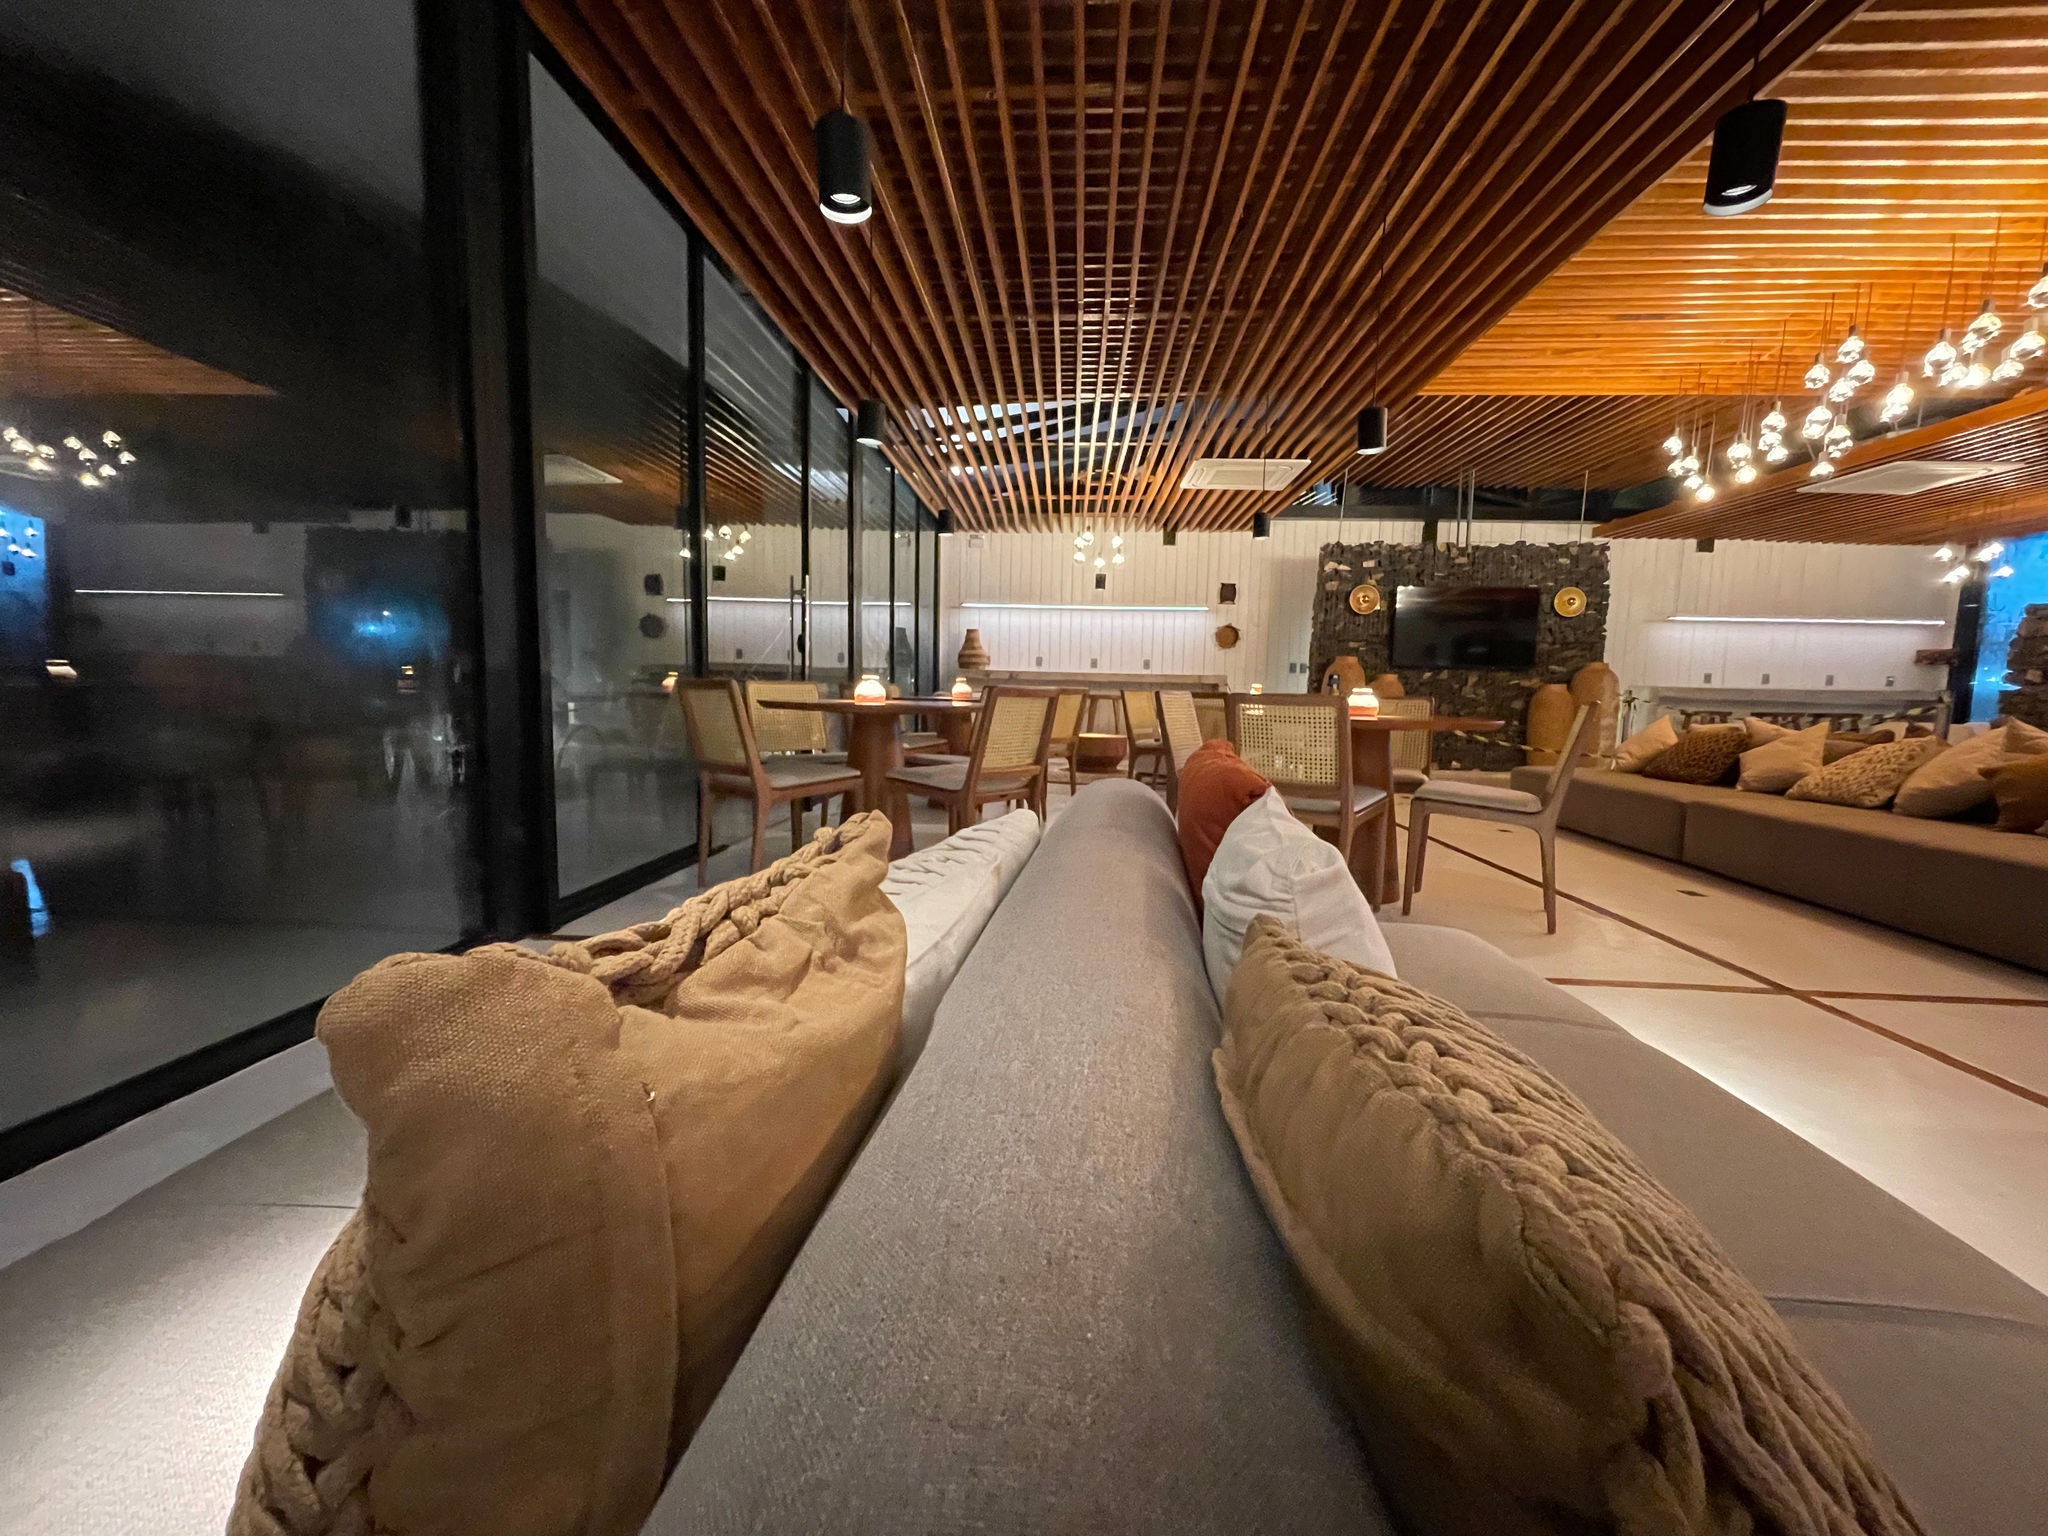 O lounge tem uma arquitetura moderna em formato de tenda e capacidade para 74 pessoas sentadas